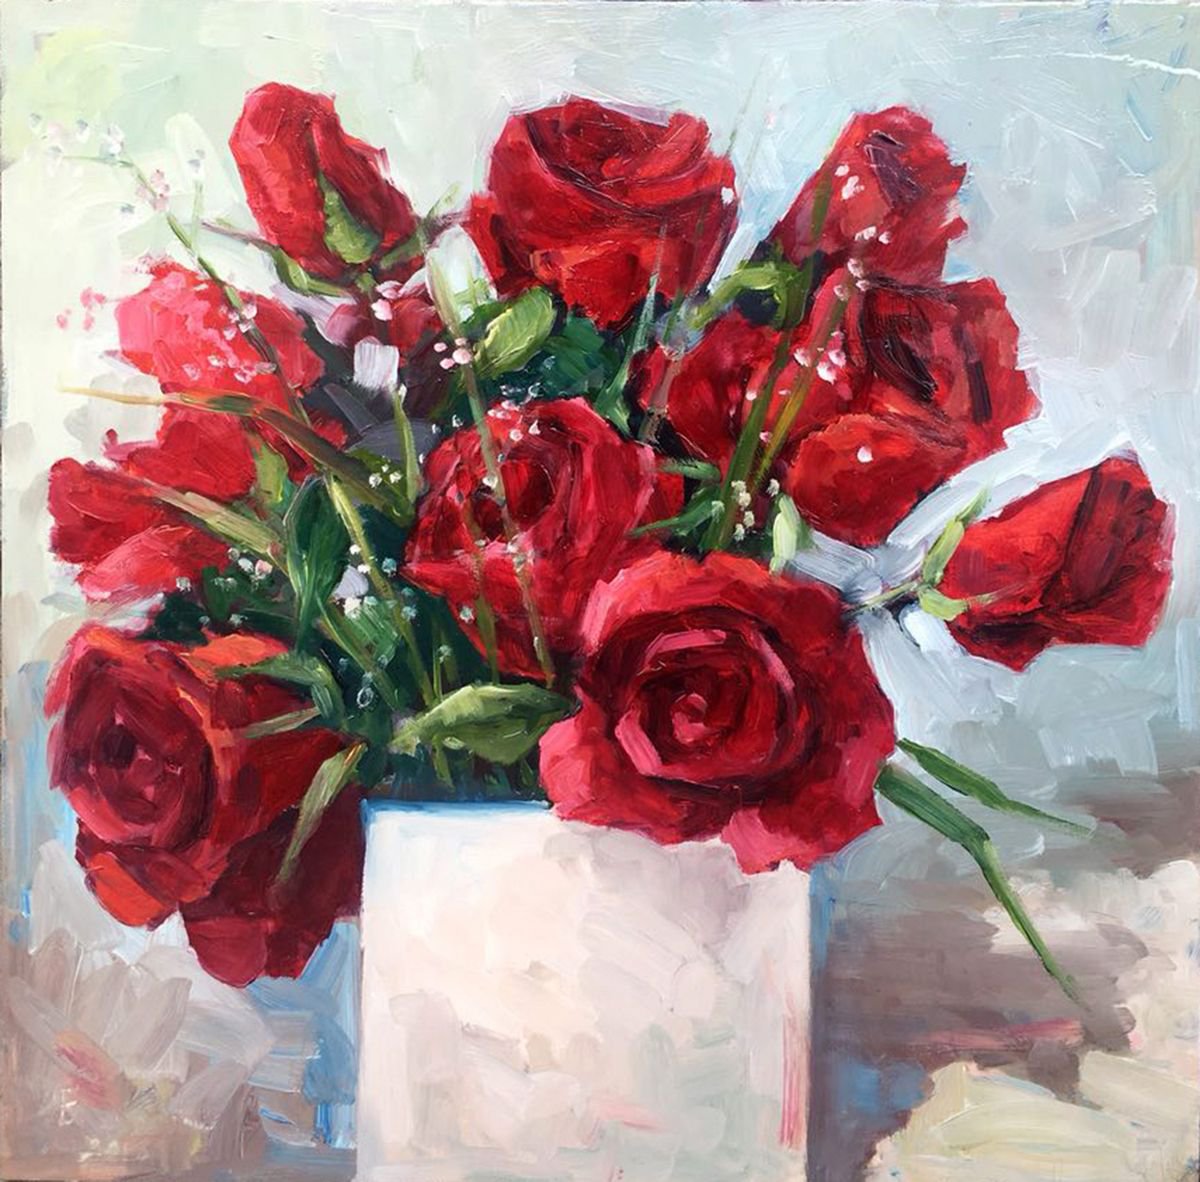 Red Roses02 by Bahareh Kamankesh